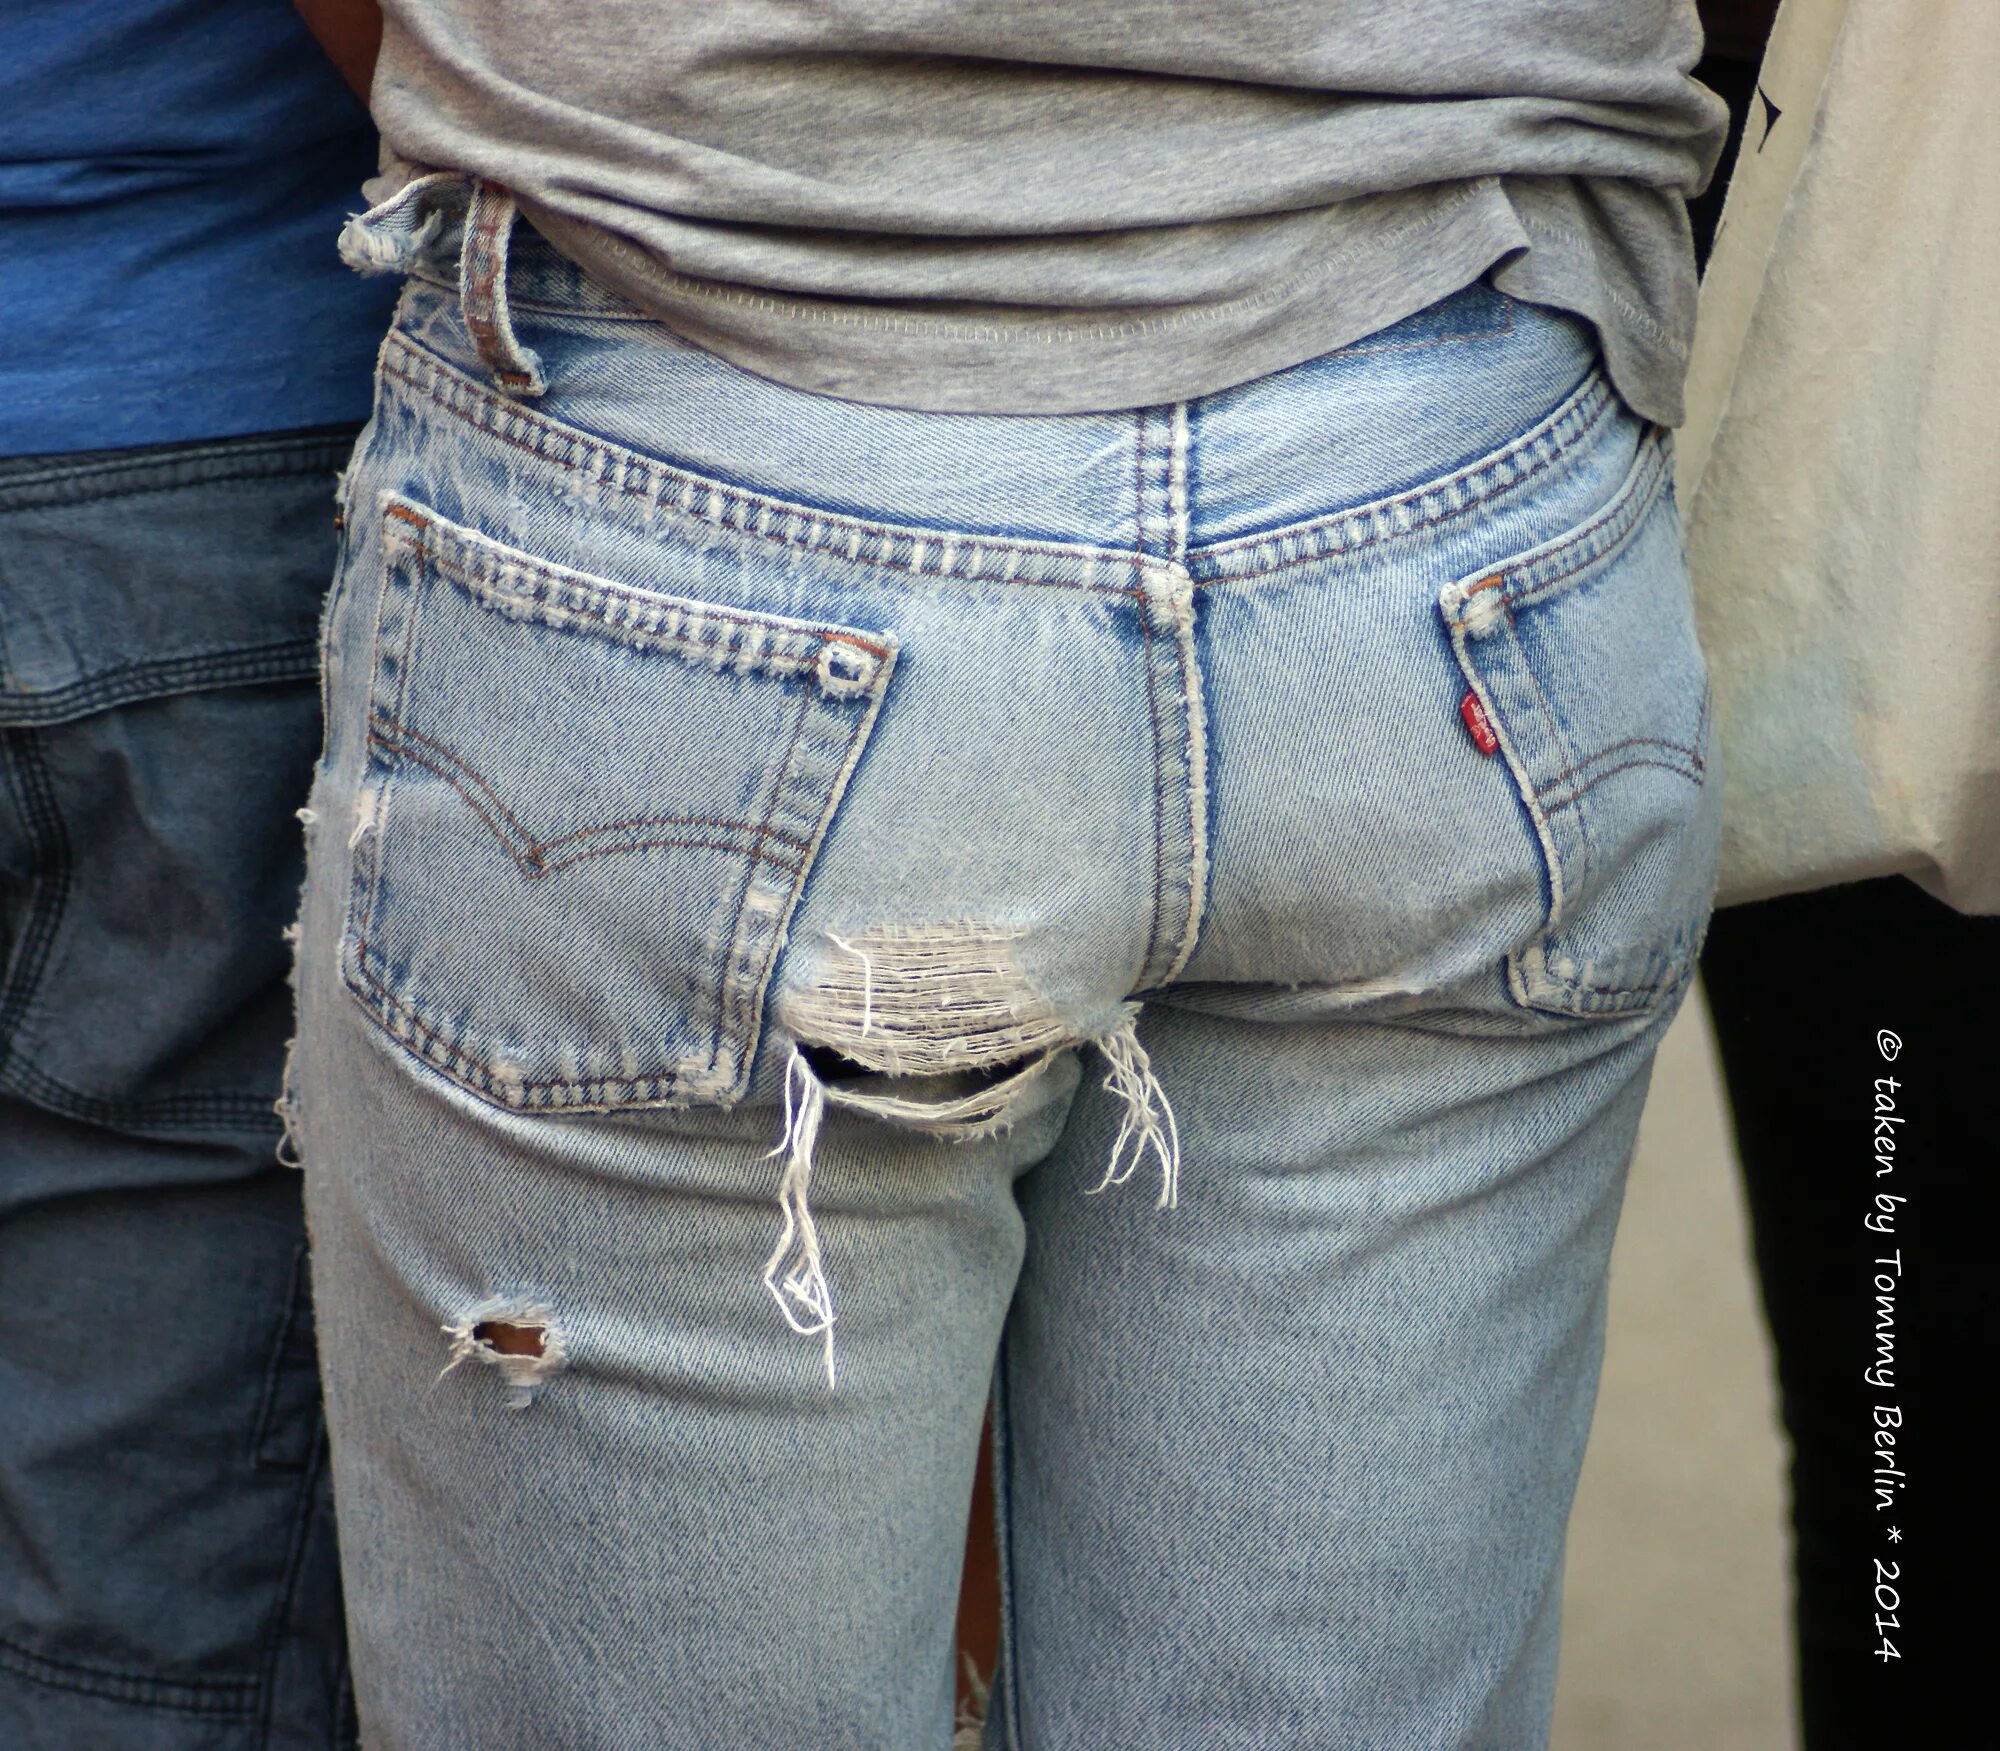 Шорты порвались. Выпуклость в джинсах. Джинсы с имитацией резинки от трусов. Гомики в джинсах левайс.